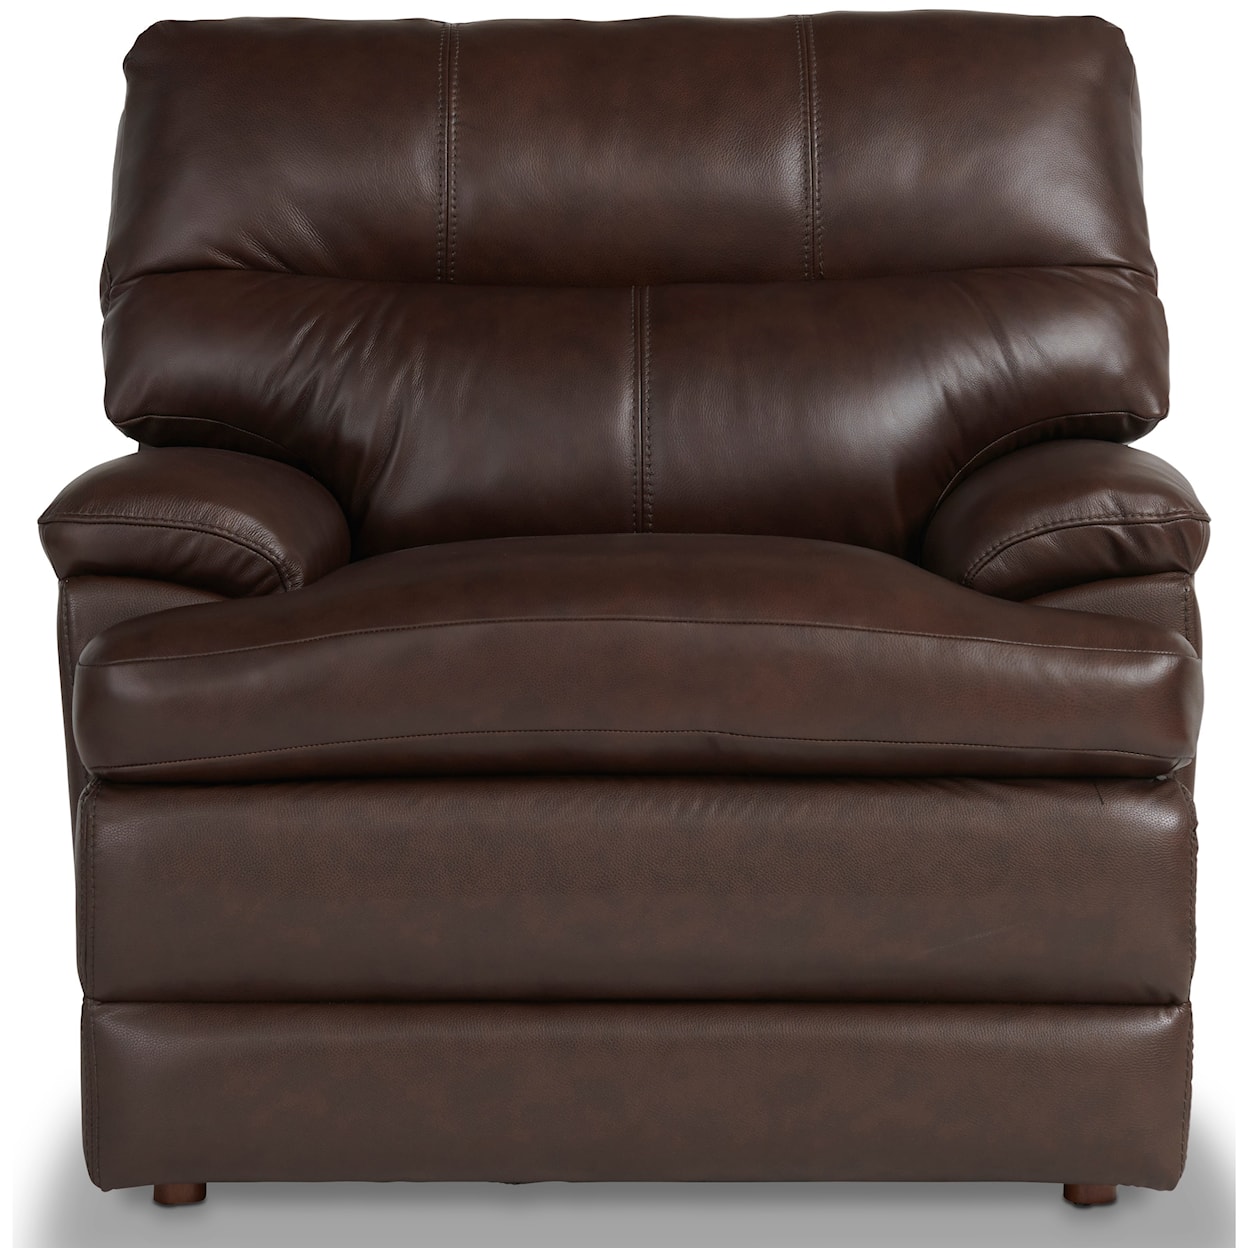 La-Z-Boy Miles Miles Top Grain Leather Match Chair